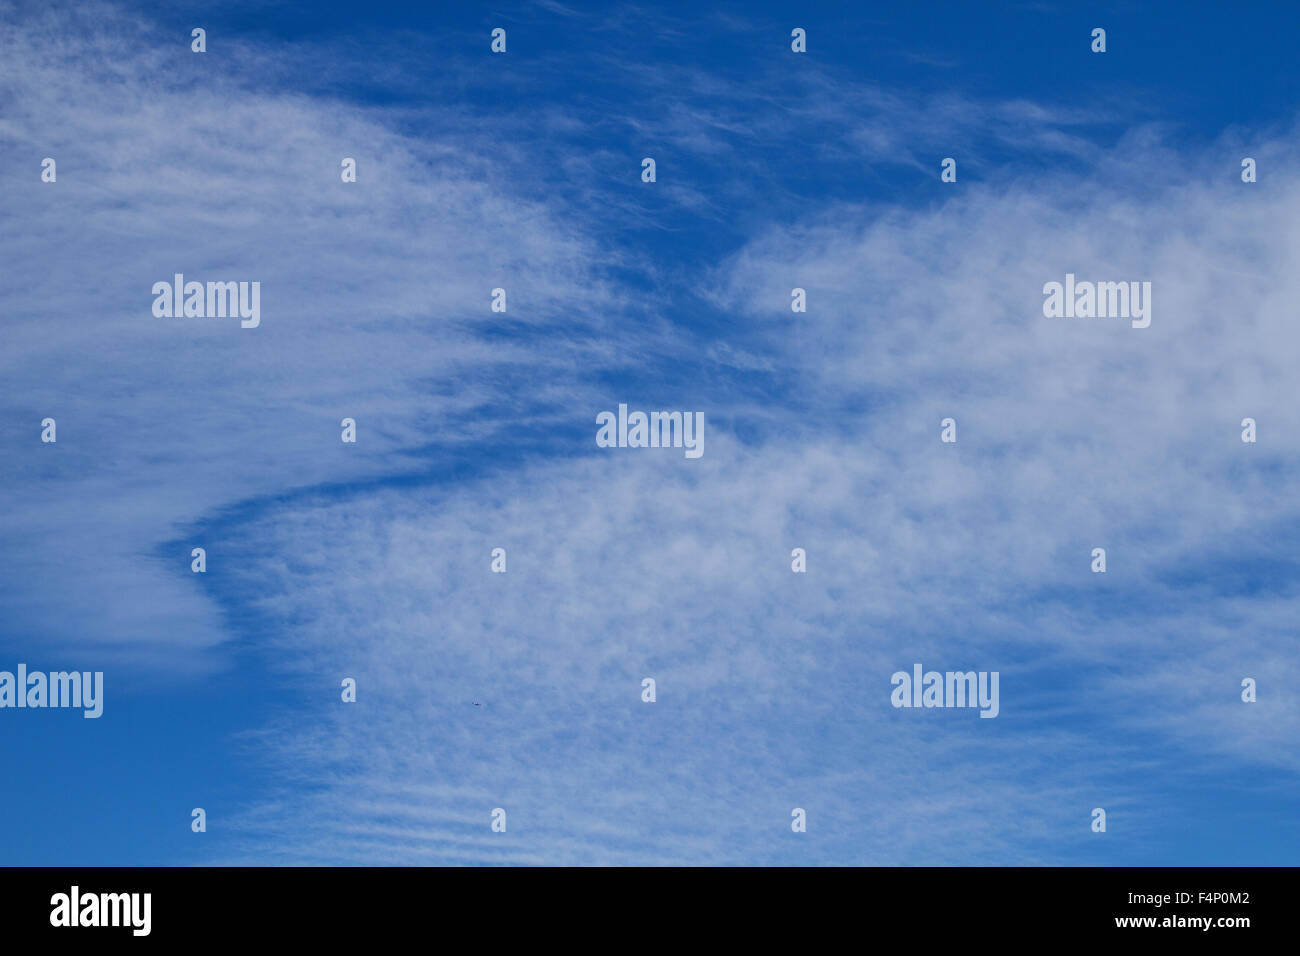 Tayside, Dundee, Écosse, Royaume-Uni, 21 octobre 2015. Météo France : Chaud et ensoleillé l'après-midi d'automne à Dundee avec les températures minimum 16°C. Scènes d'Automne glorieux de basse altitude 'Fougère' ou 'ackerel' les nuages qui se forment des schémas inhabituels dans le ciel au-dessus de la ville de Dundee. © Dundee Photographics / Alamy Live News. Banque D'Images